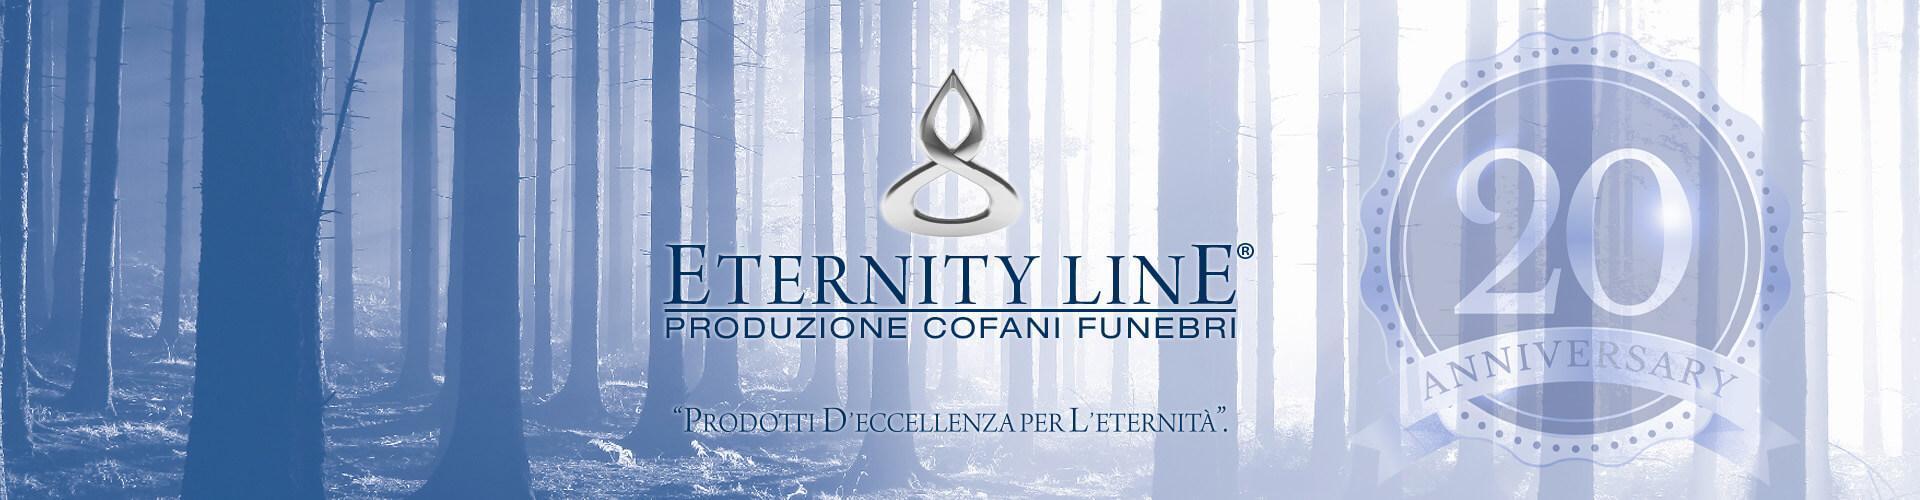 eternity_line_20